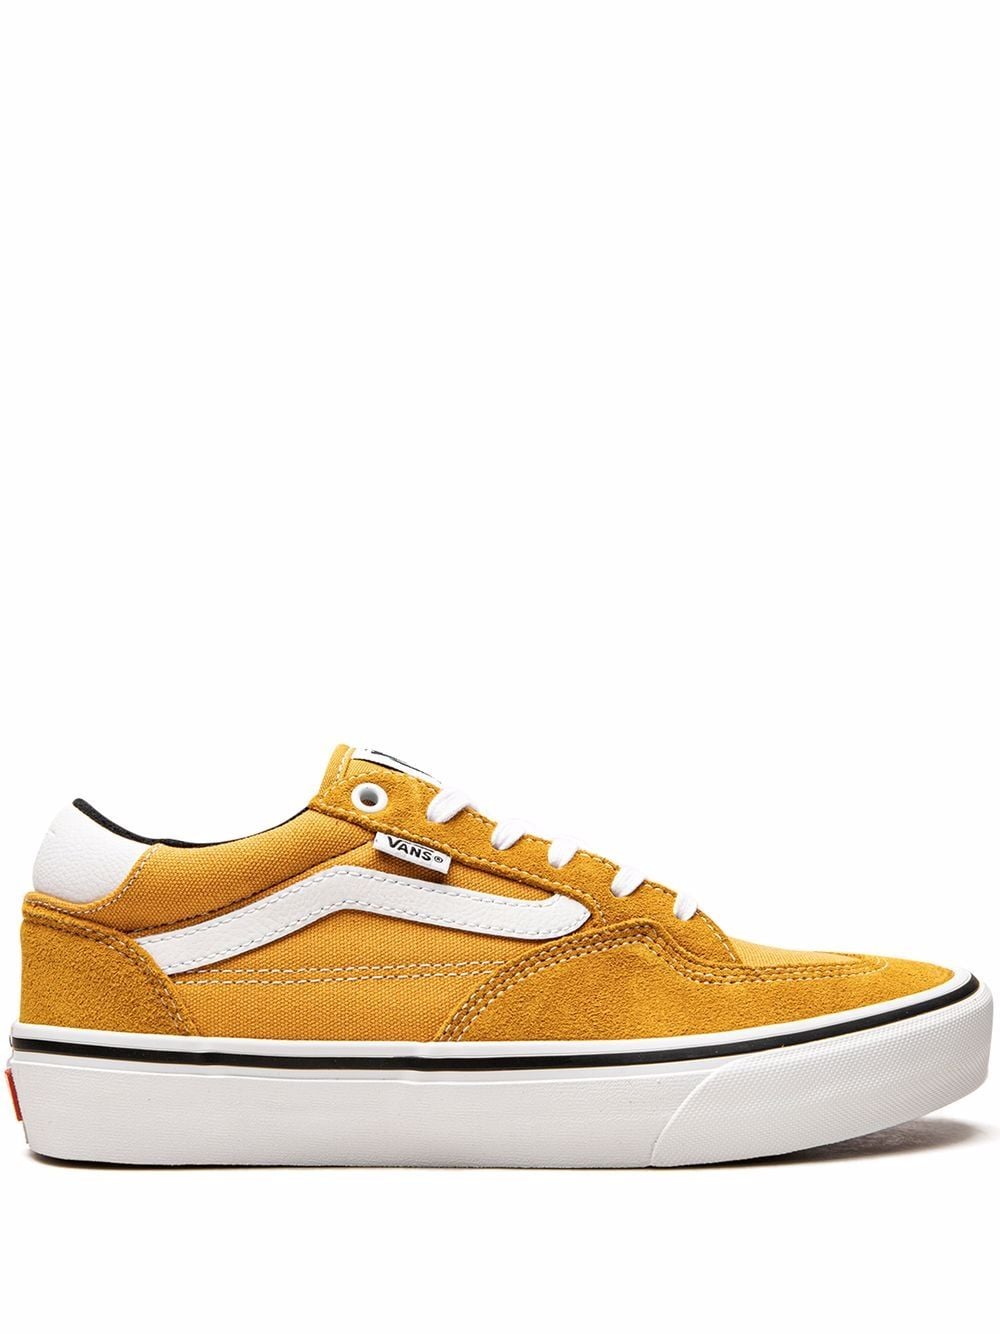 Vans Rowan low-top sneakers - Yellow von Vans